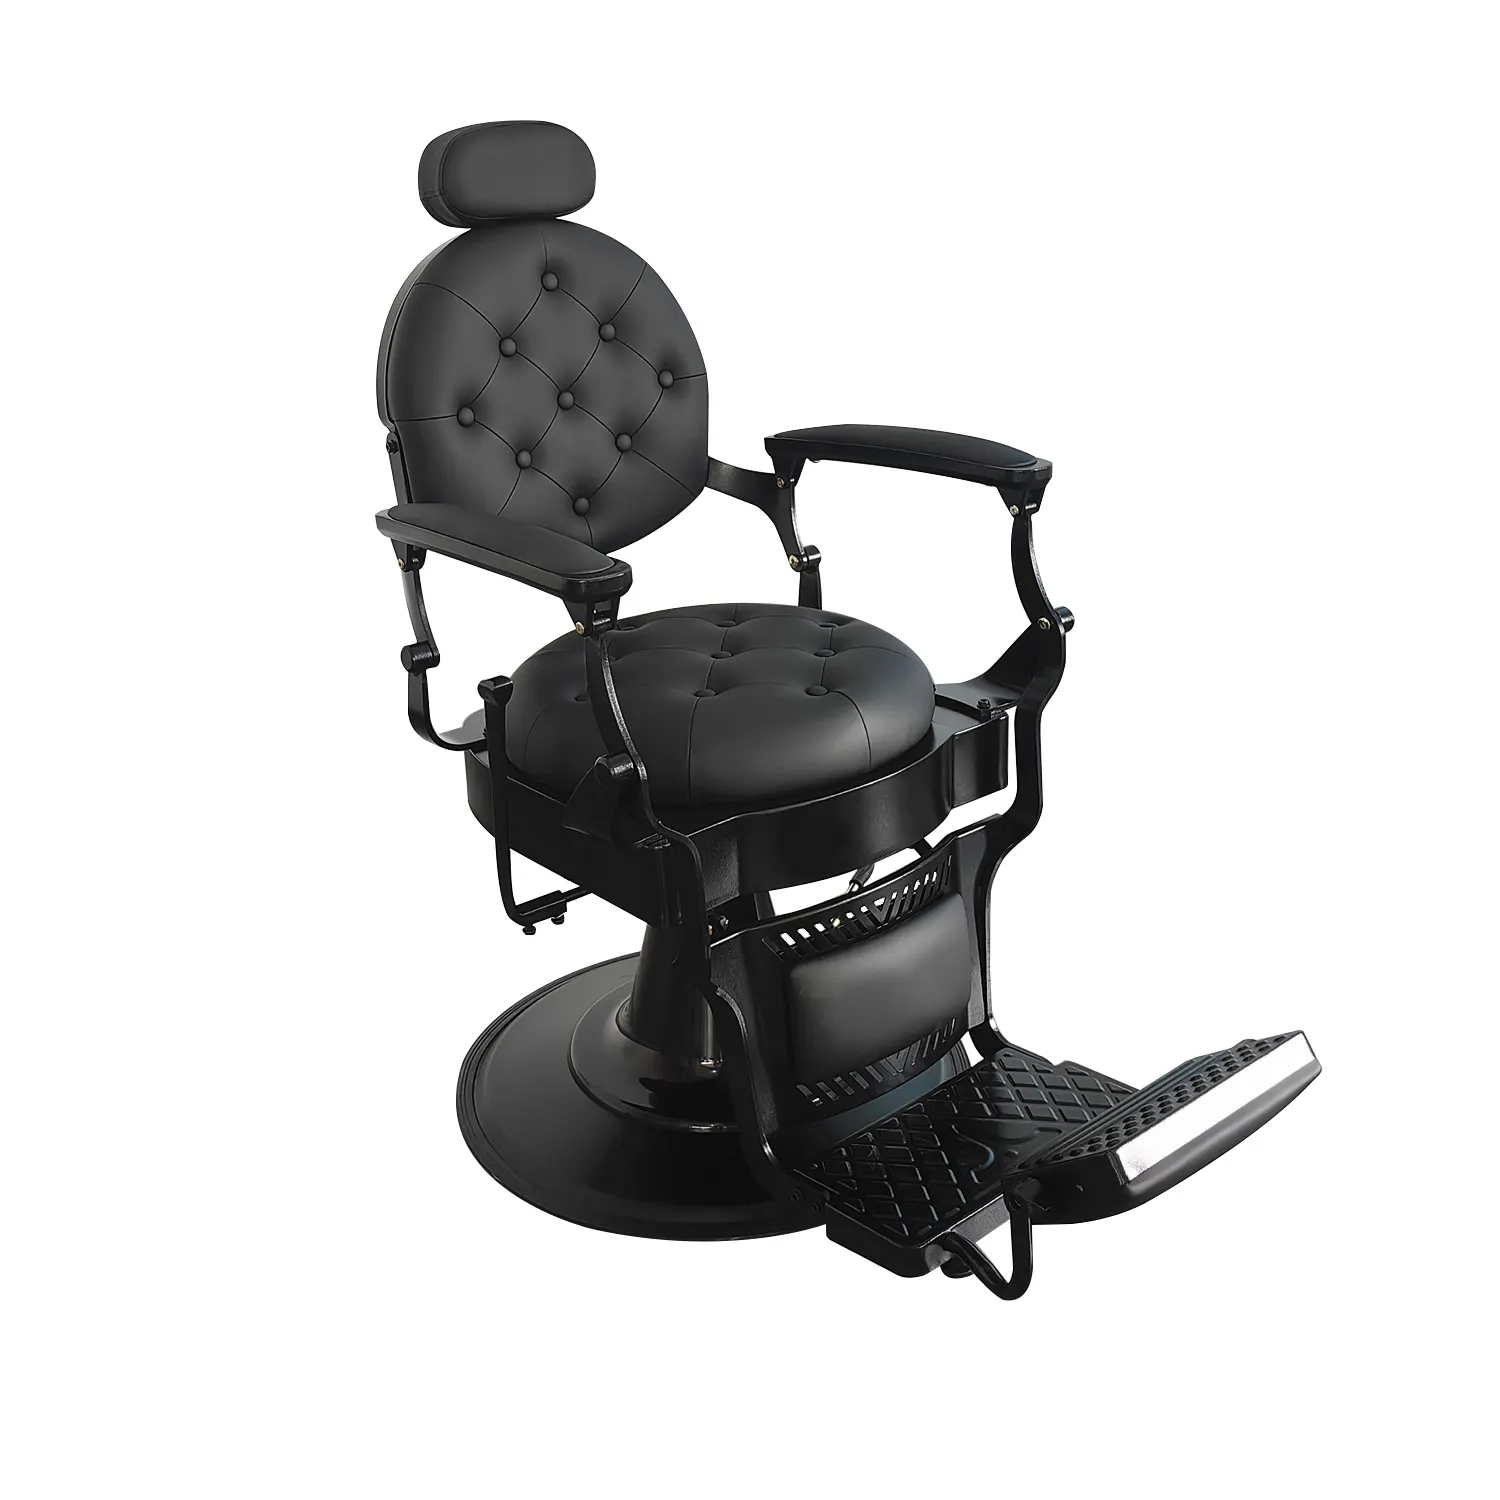 Silla de barbero de lujo altura ajustable giratoria sillas de salón de peluquería silla de barbero utopía